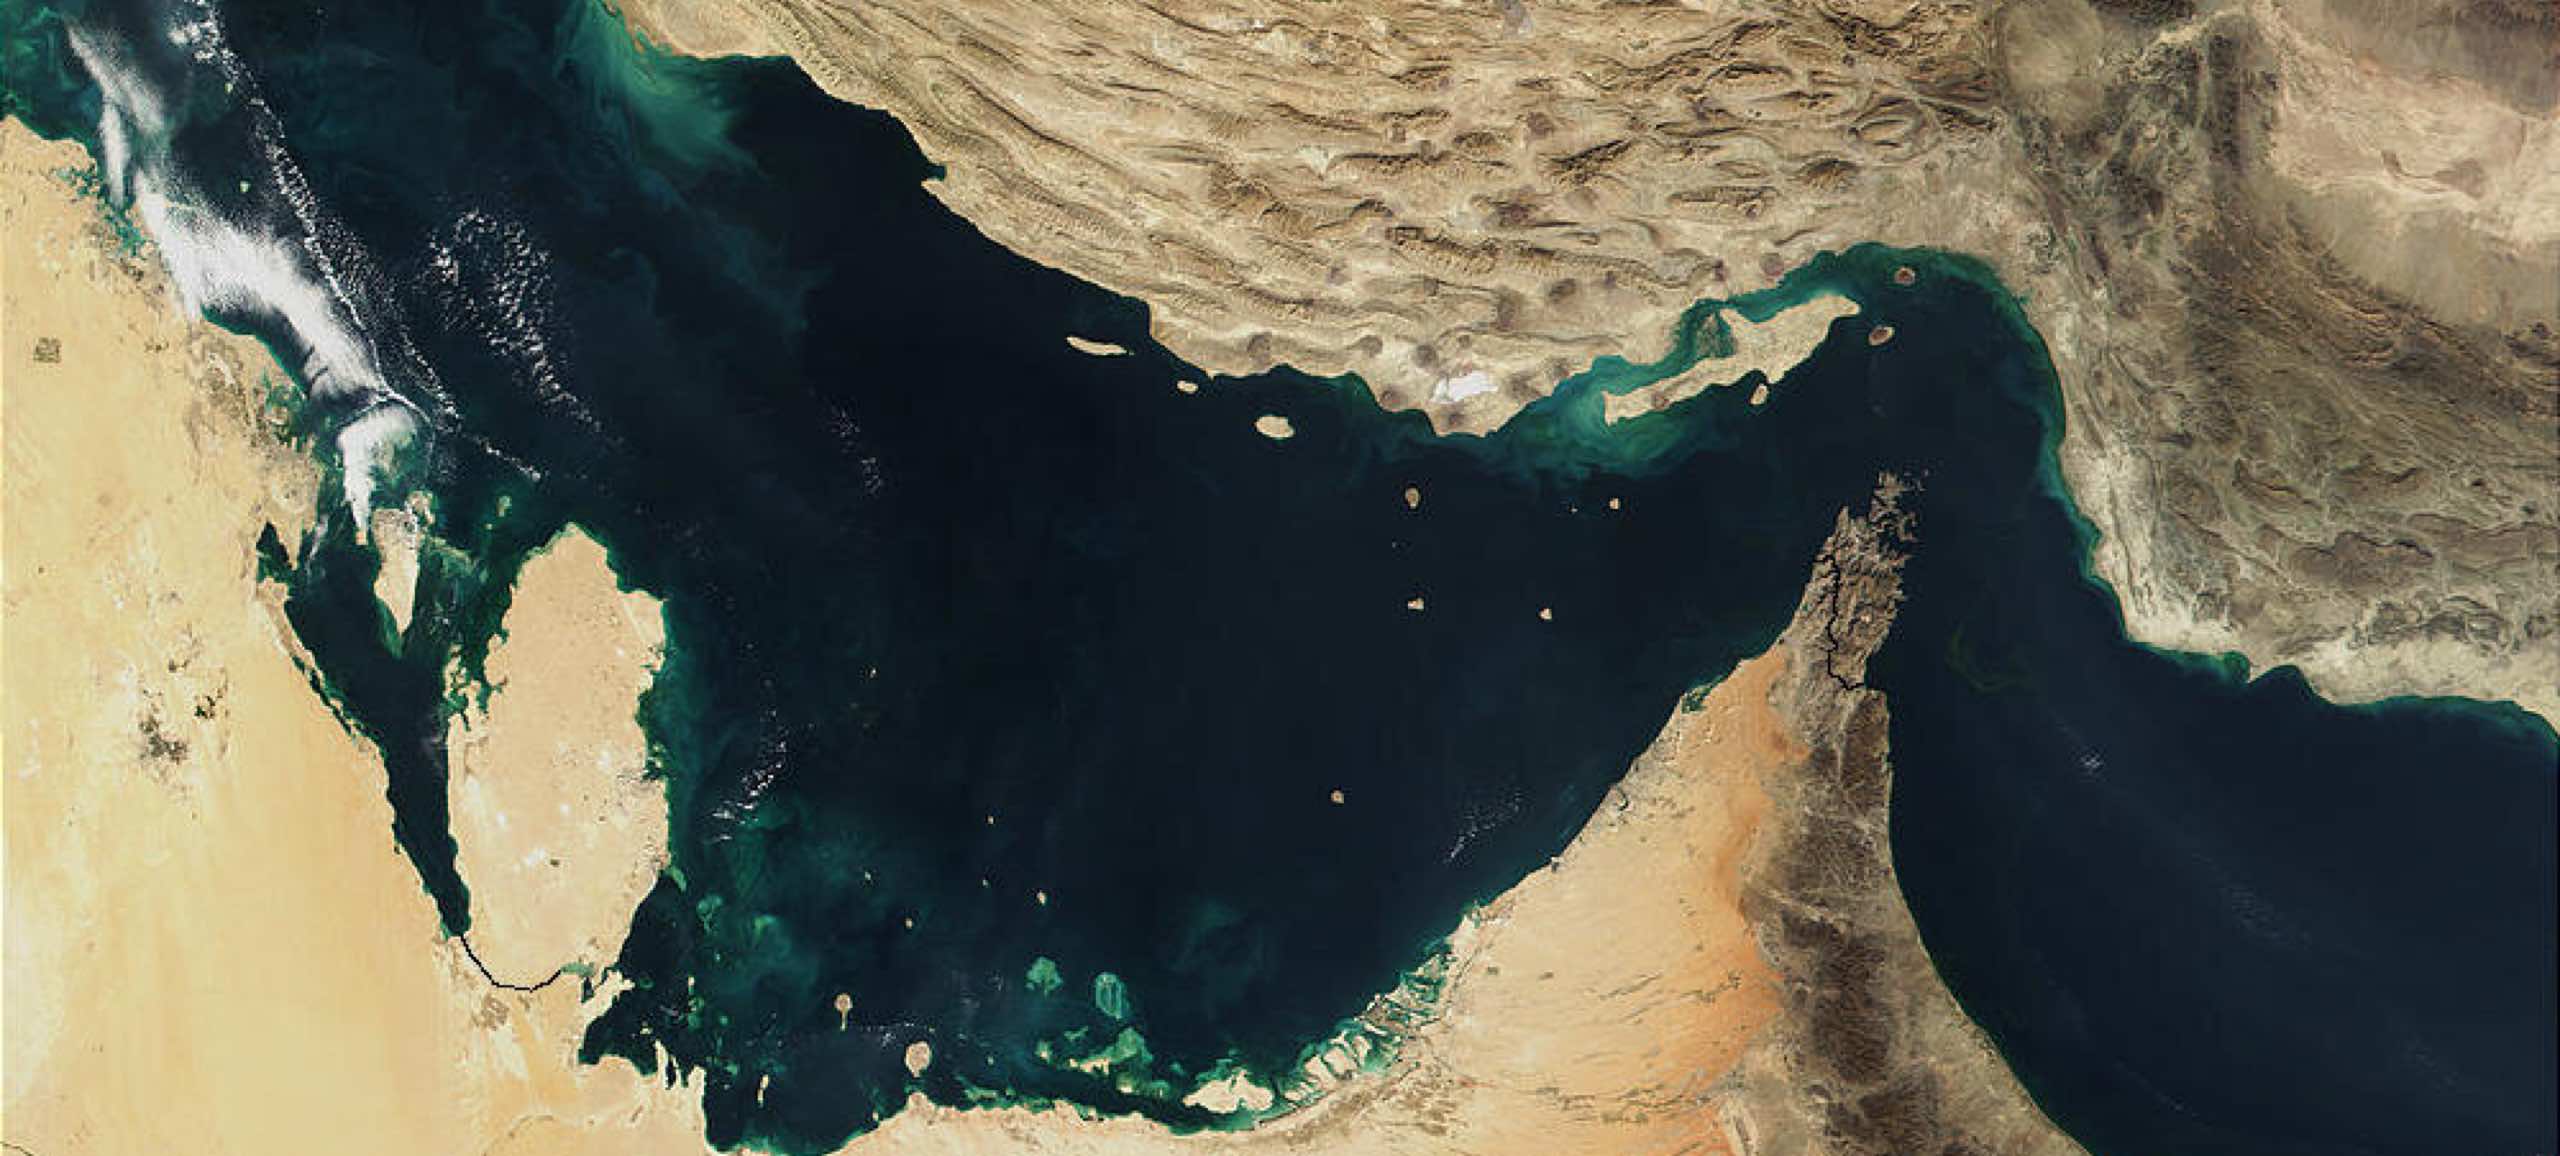 كيف يمكن لدول الخليج الاستفادة من موقعها الاستراتيجي كمركز عالمي للطاقة الخضراء؟